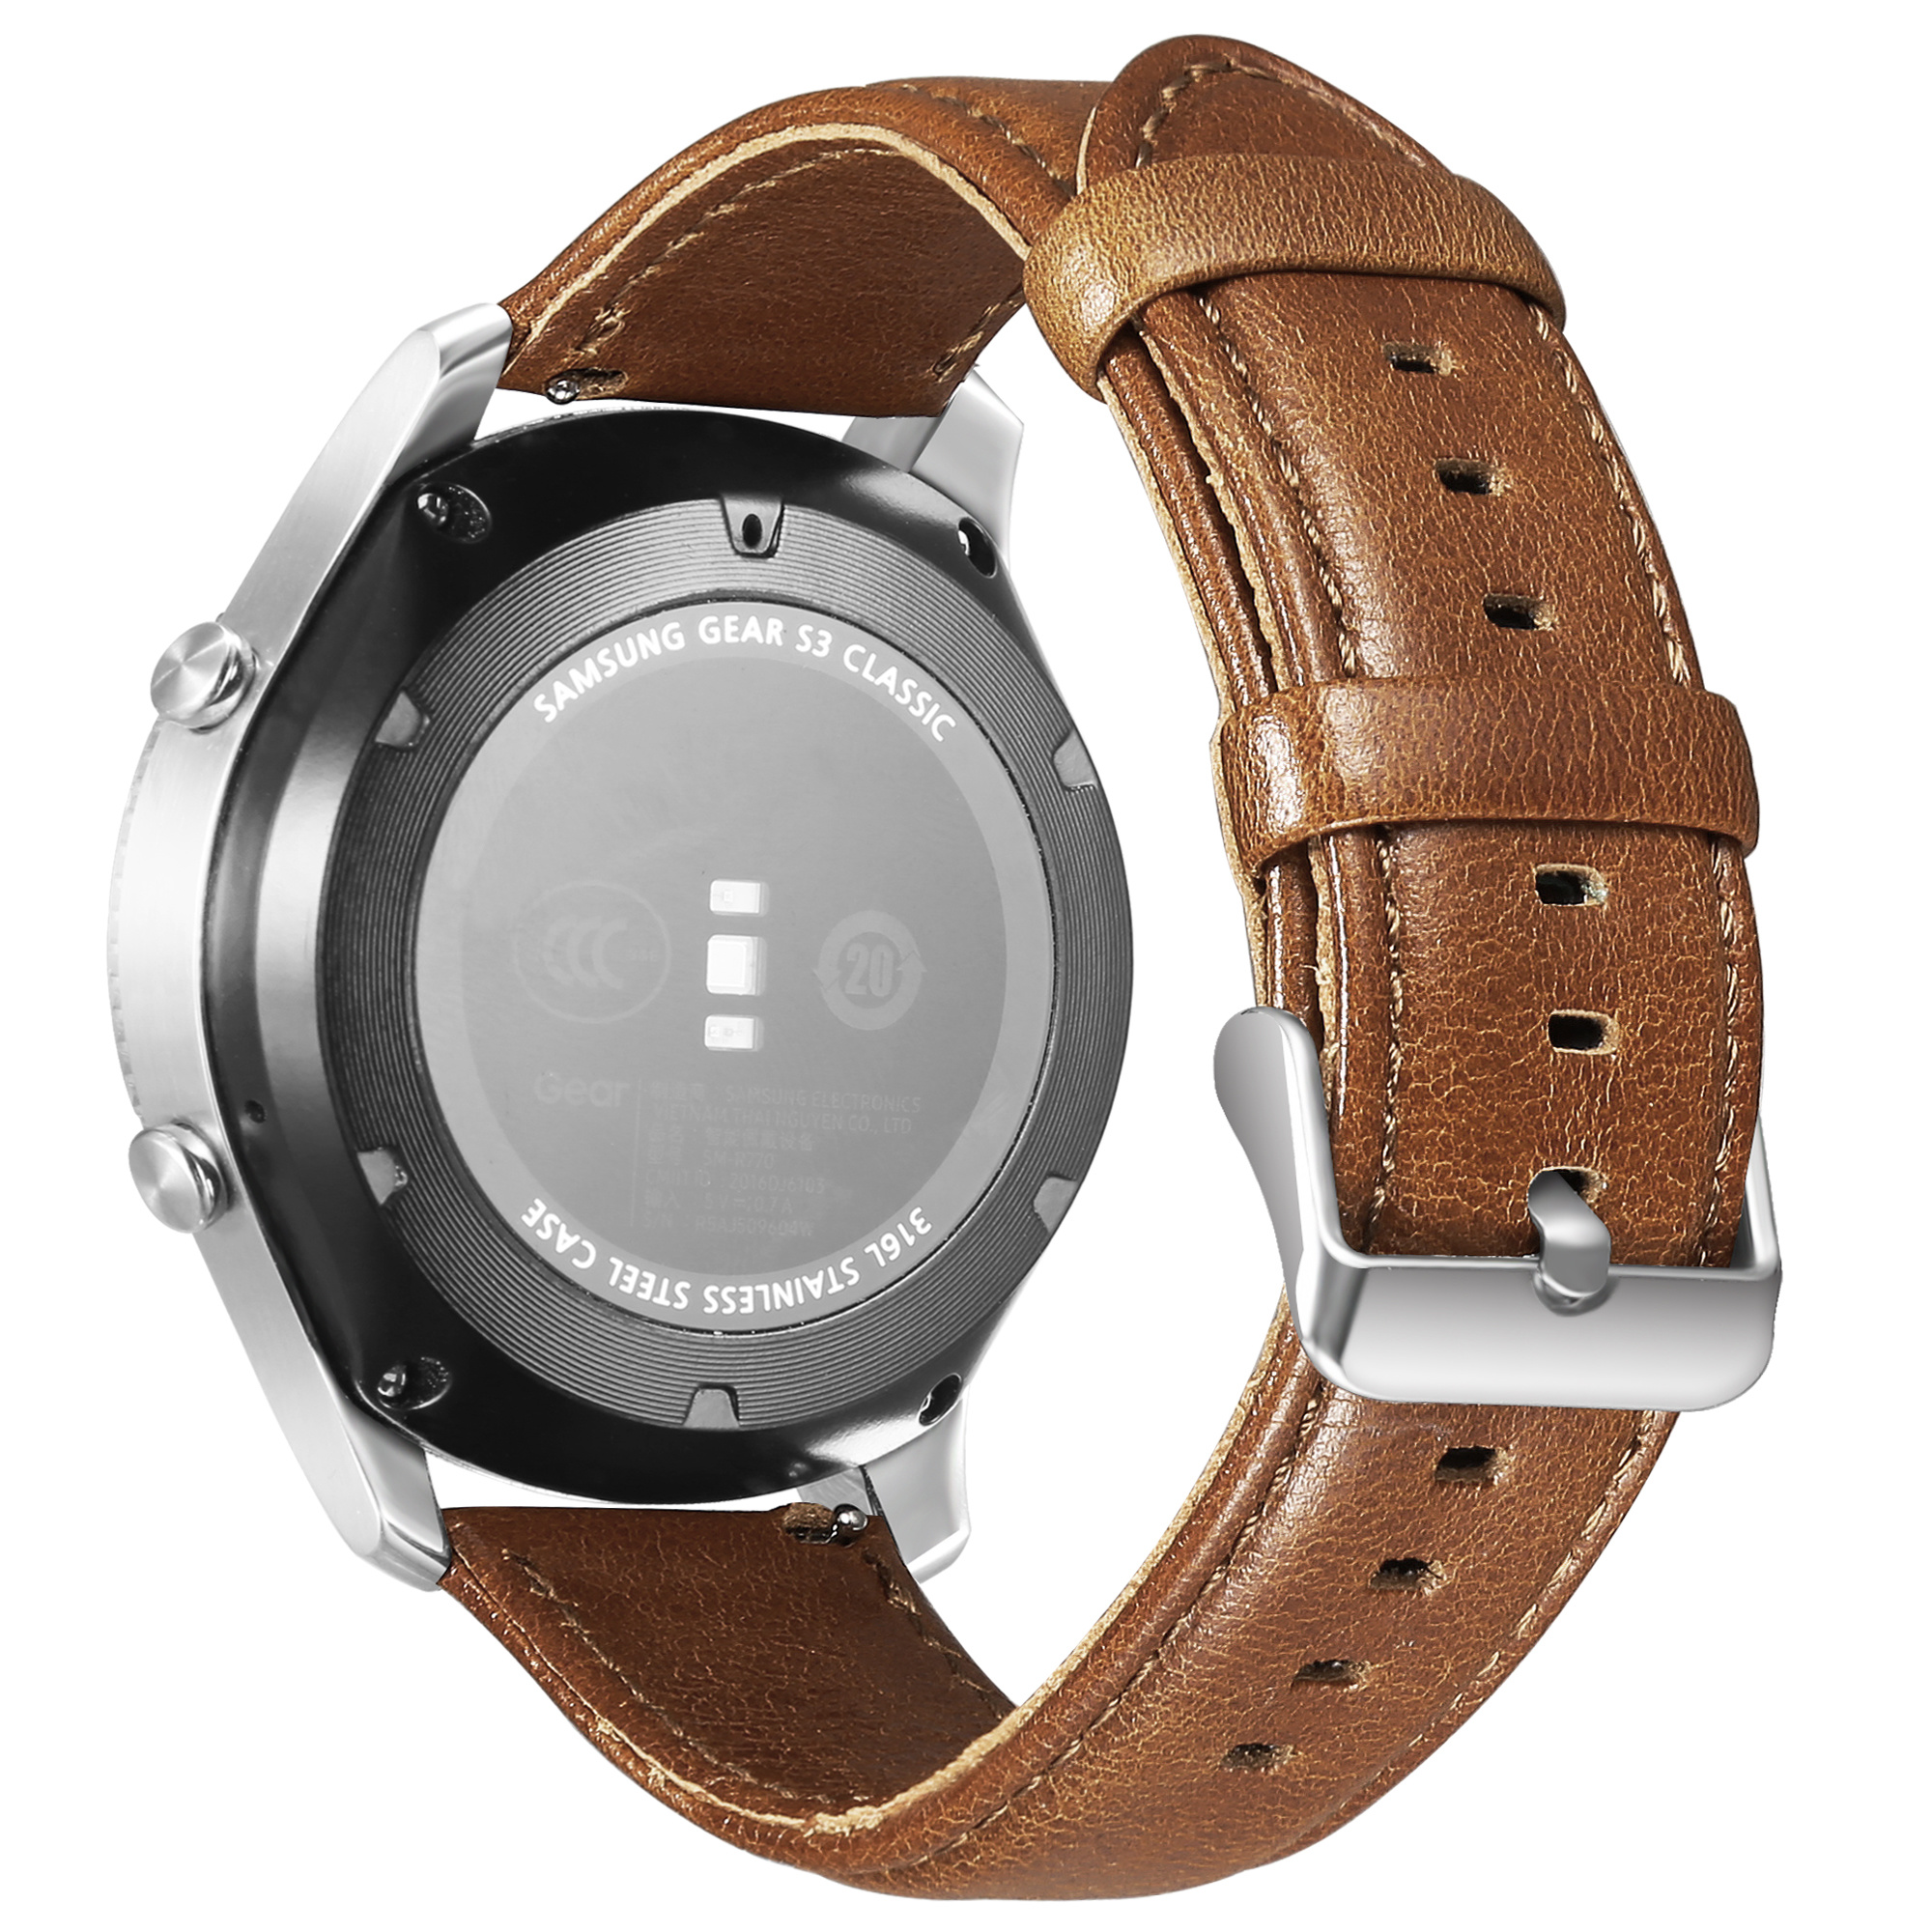 Cinturino in vera pelle per Samsung Galaxy Watch - marrone chiaro